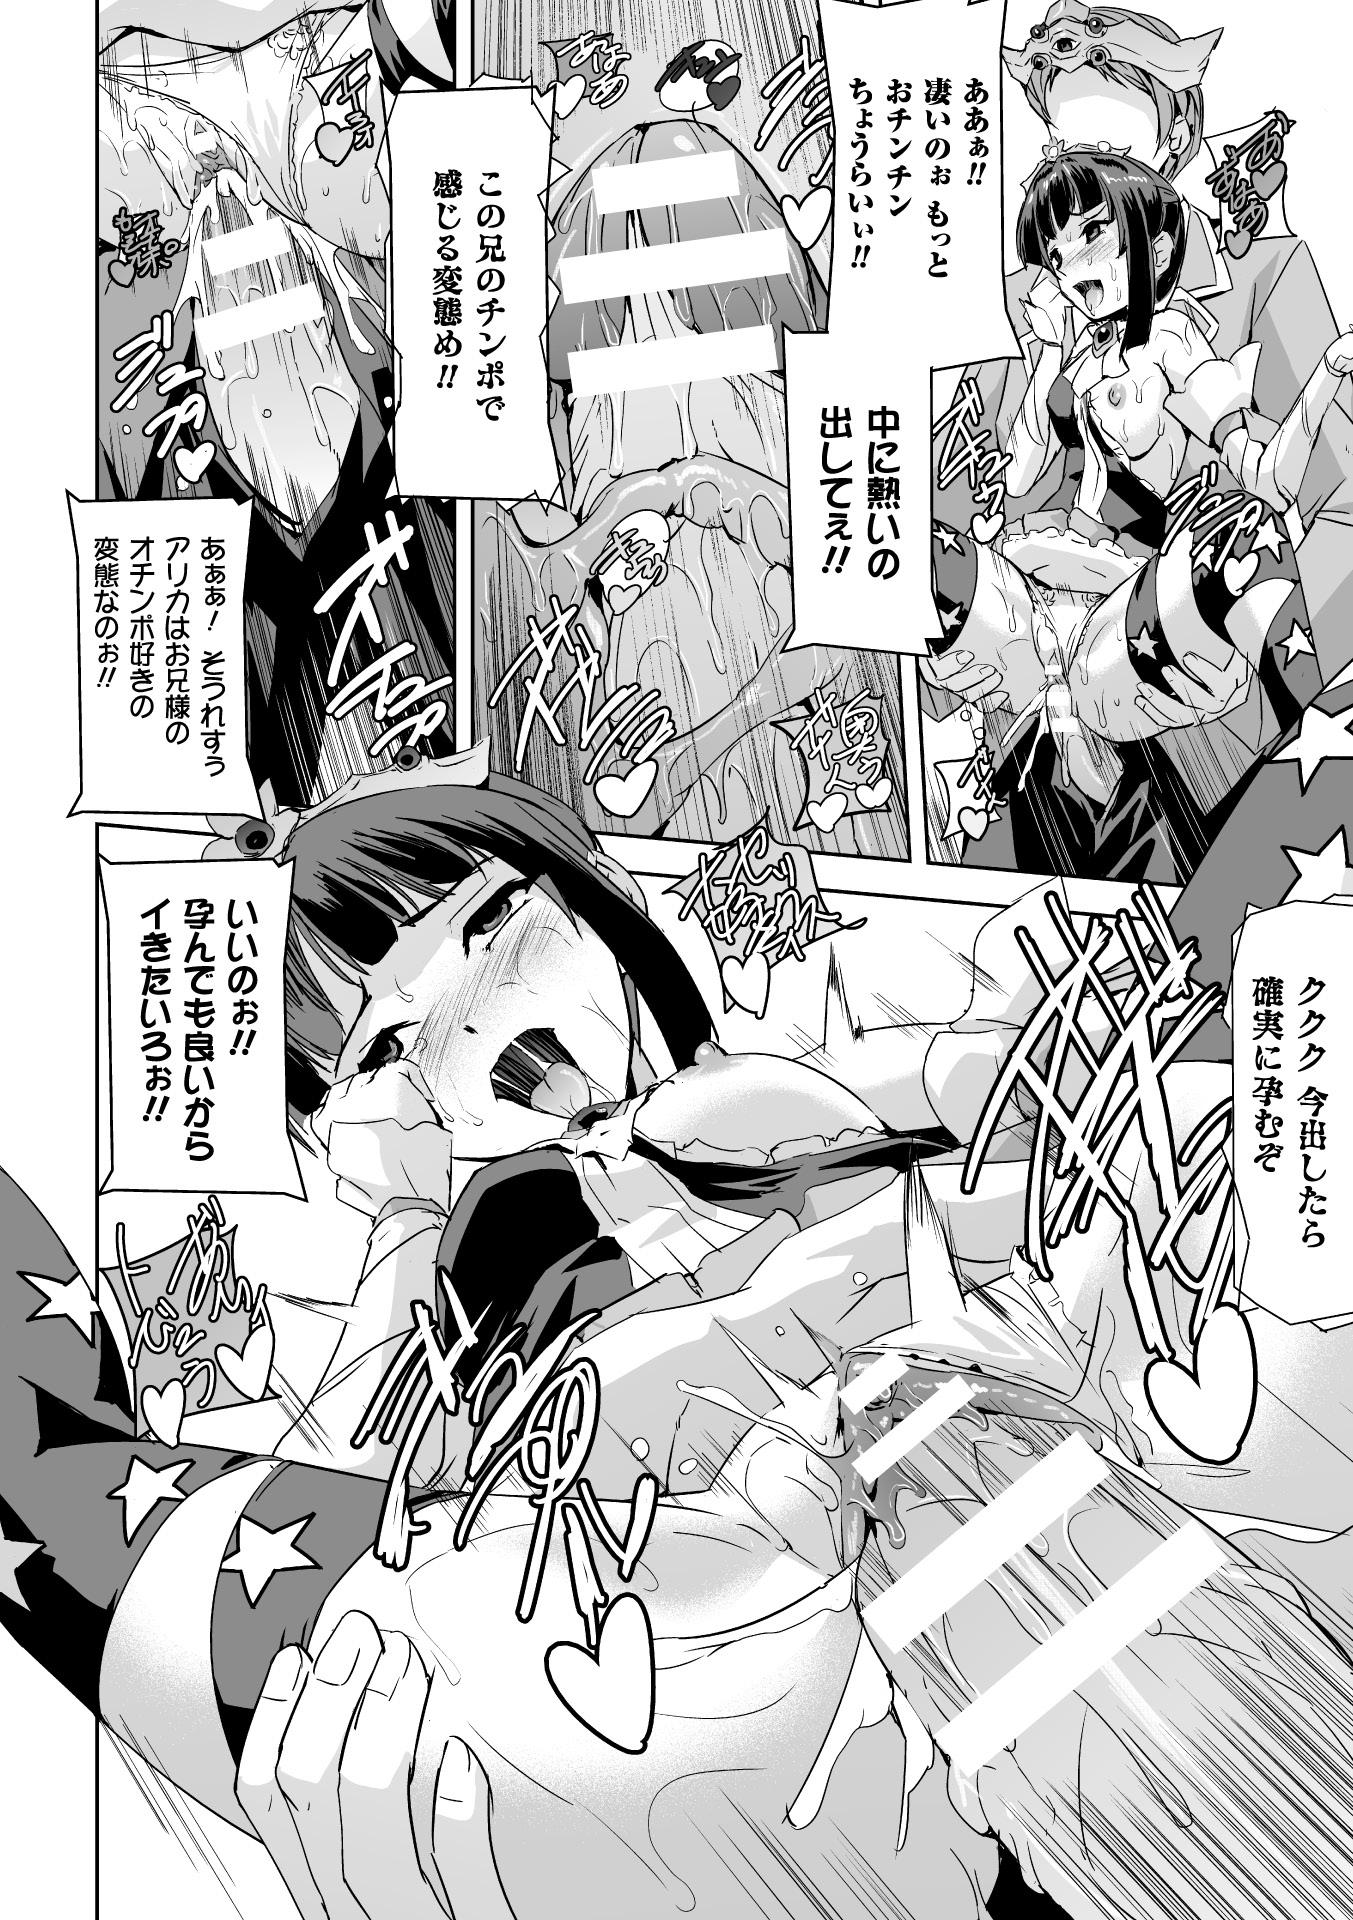 Seigi no Heroine Kangoku File Vol. 4 77